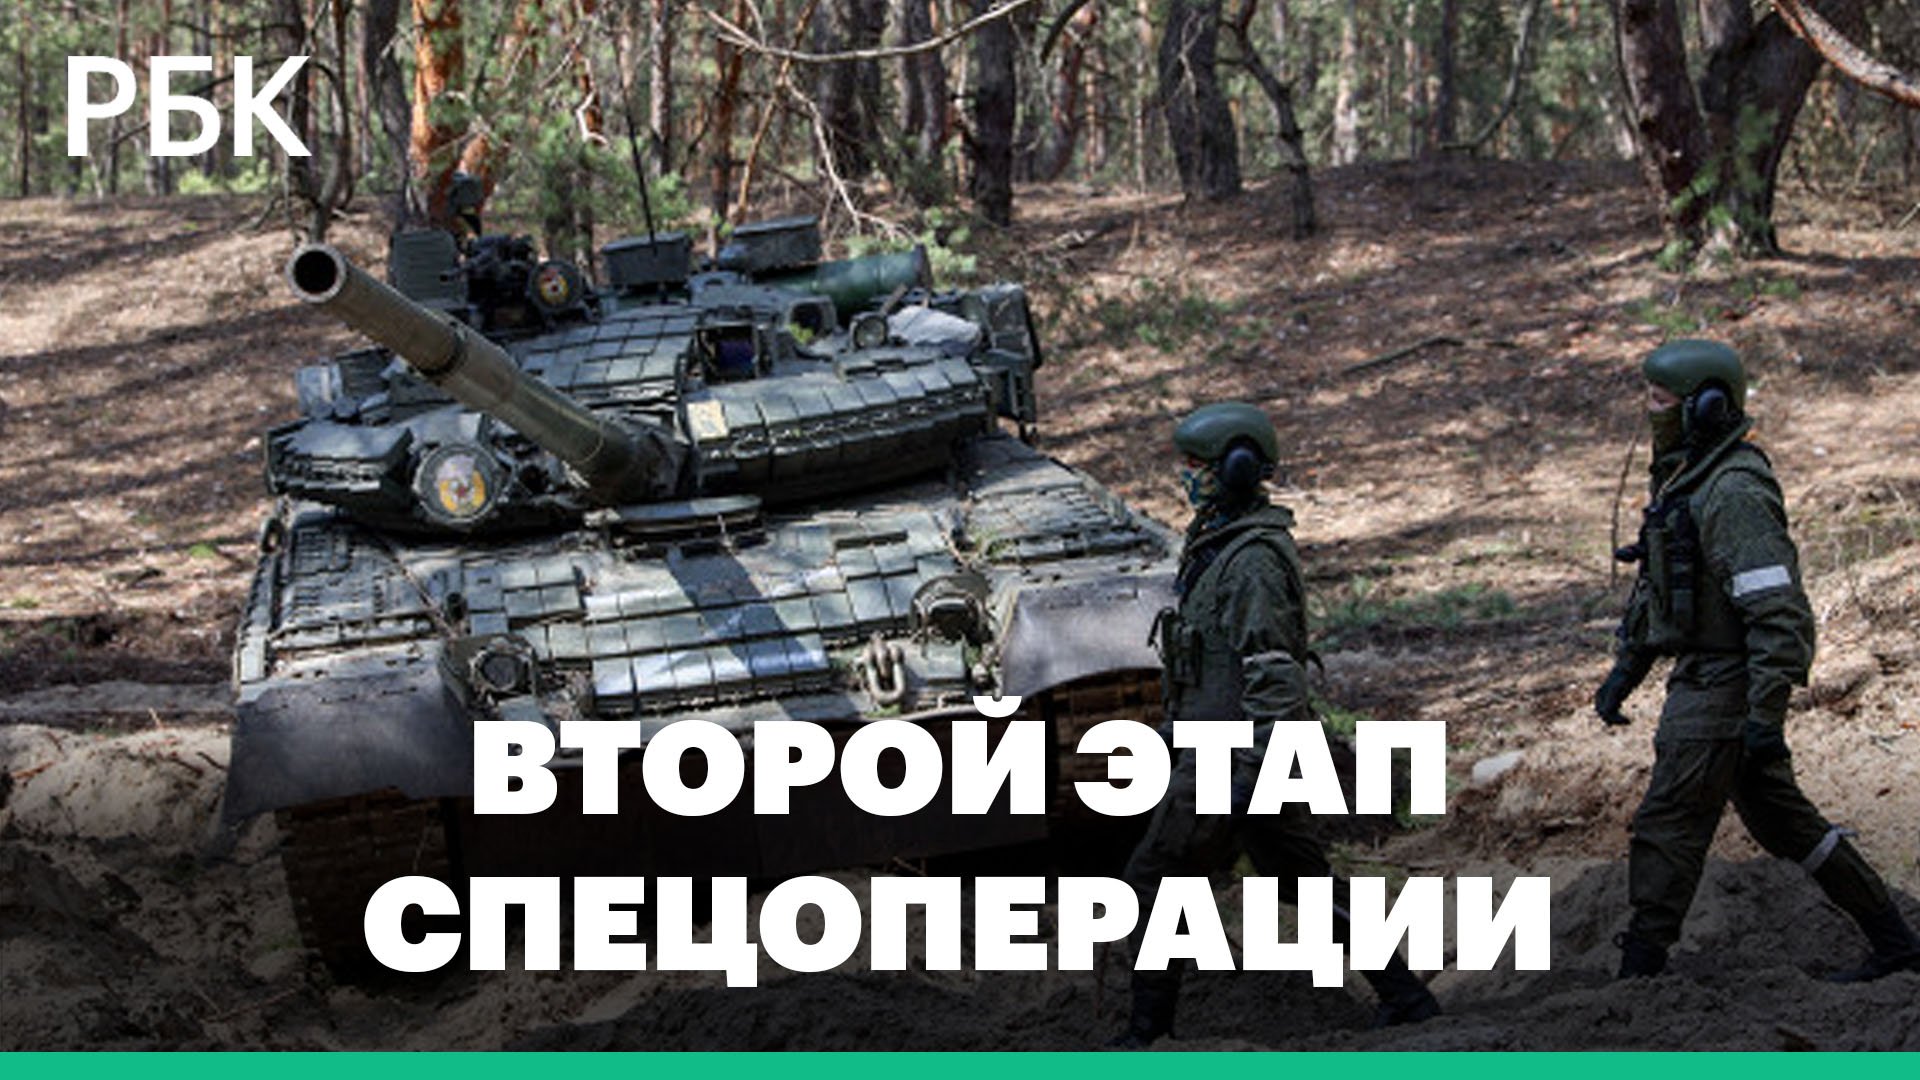 Второй этап военной спецоперации: контроль Донбасса и Южной Украины